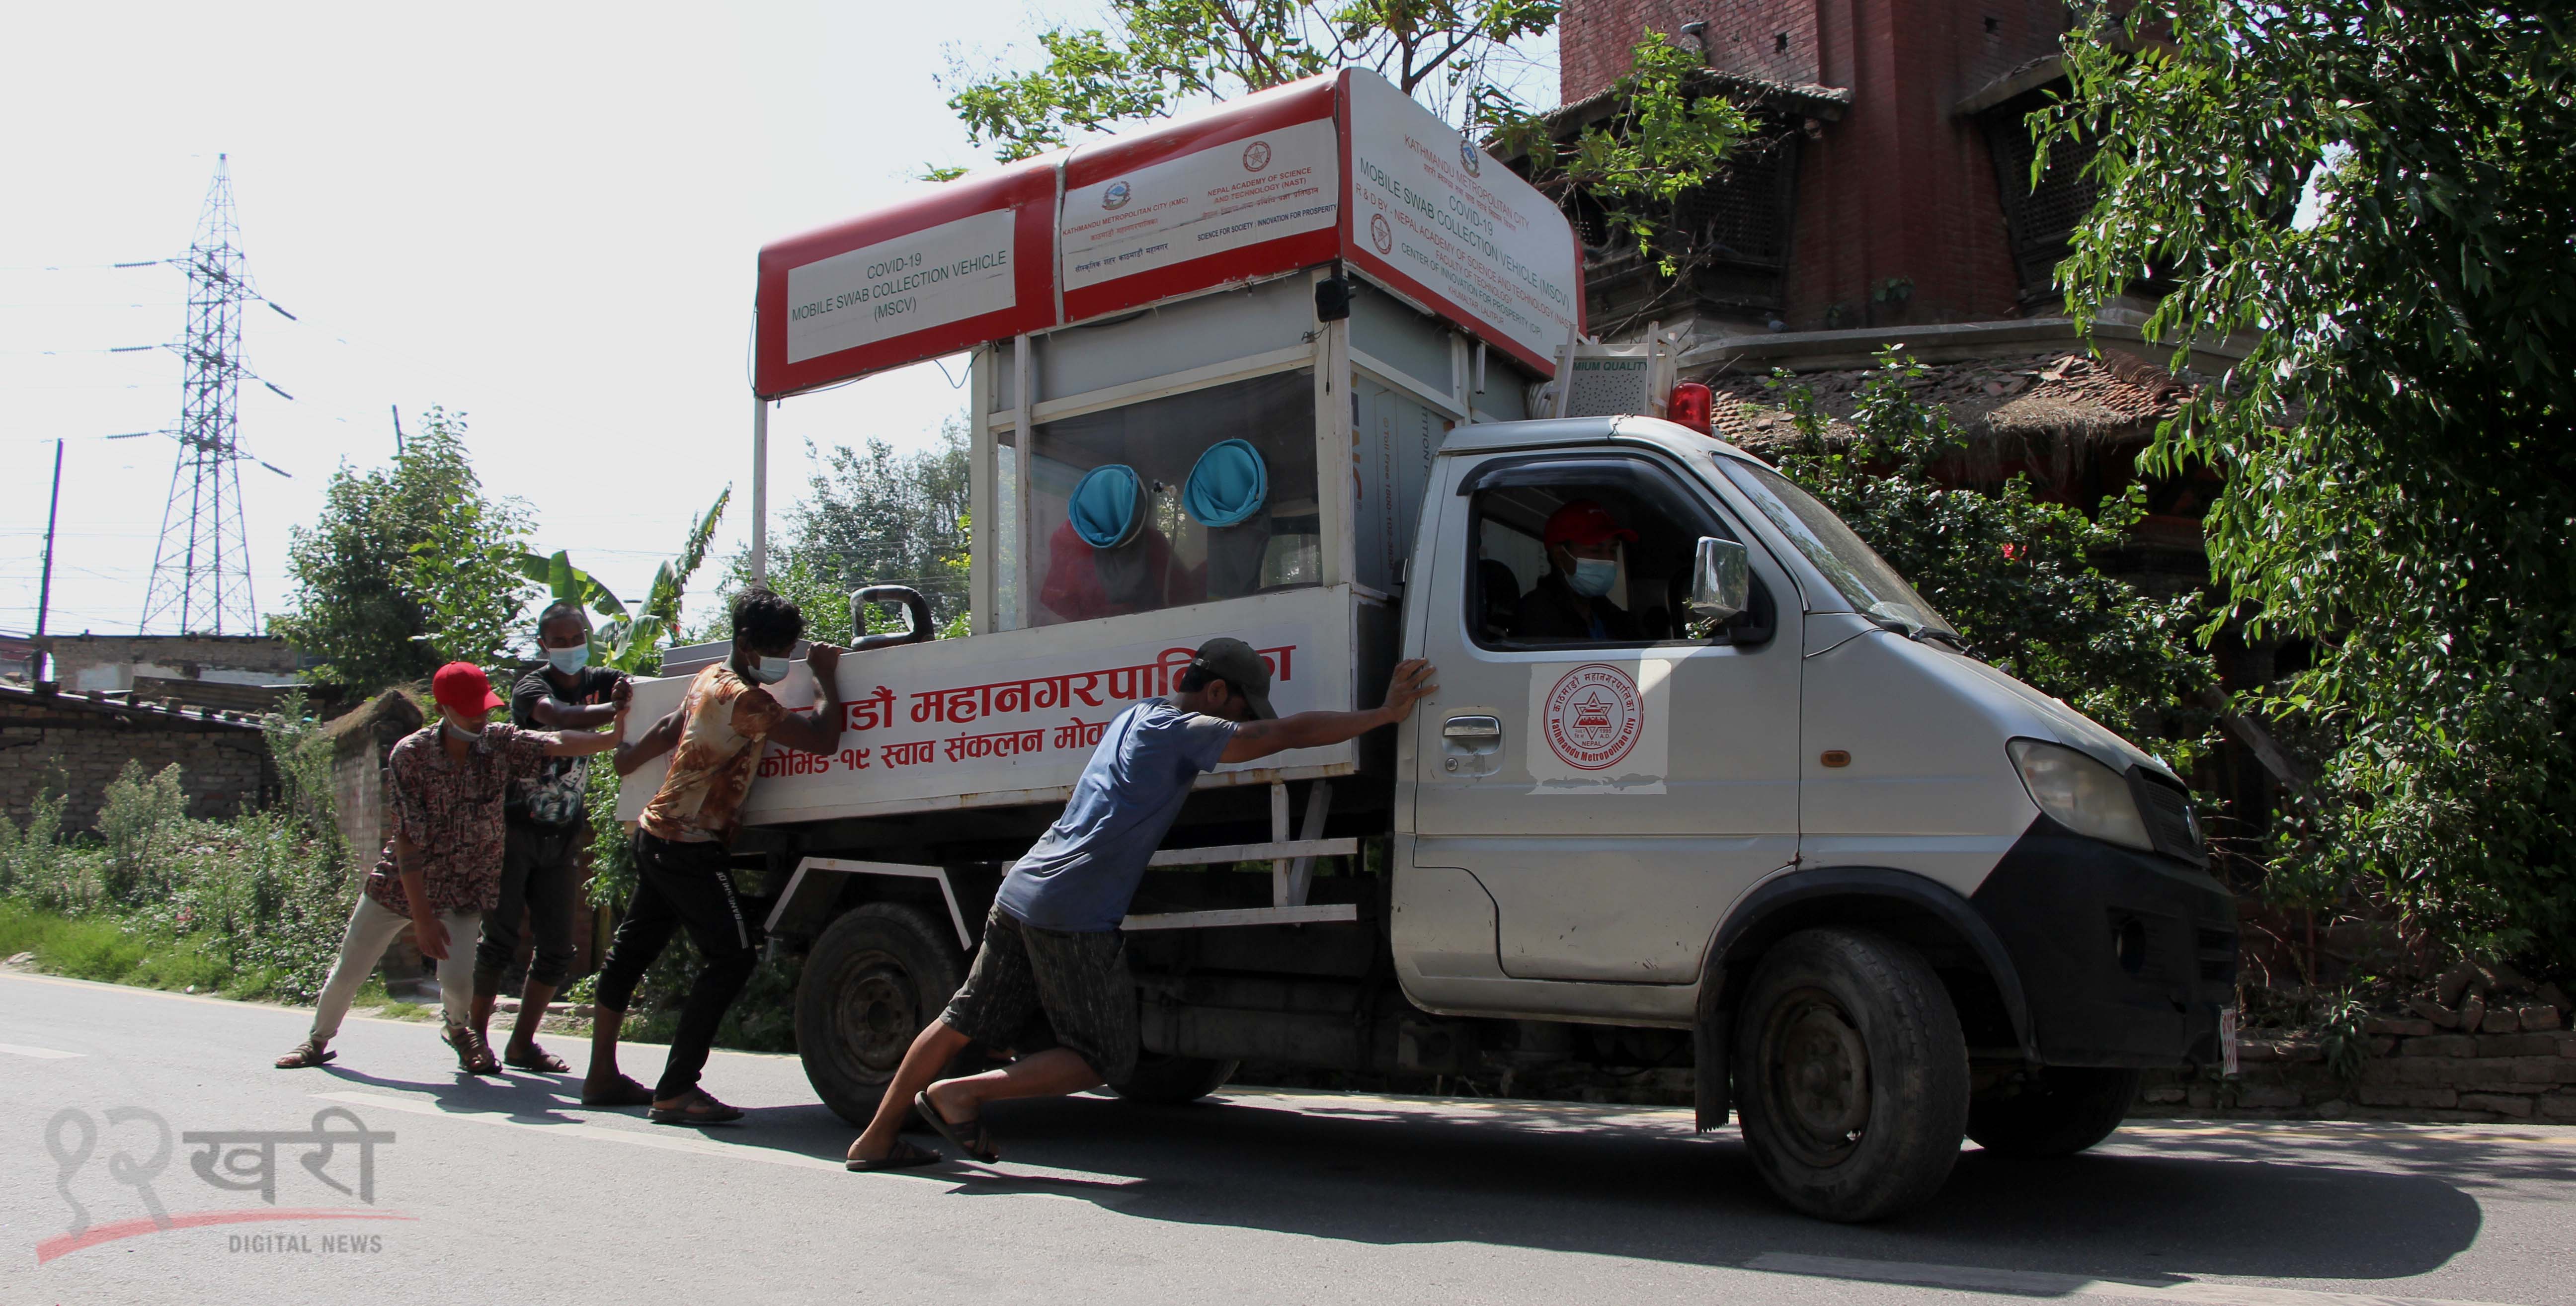 काठमाडौं महानगरकाे कोरोना परीक्षणमा प्रयोग भइरहेकाे गाडी टेकुमा बिग्रेपछि ठेलेर ग्यारेजतर्फ लगिँदै । तस्बिर : हरिशजंग क्षेत्री/बाह्रखरी